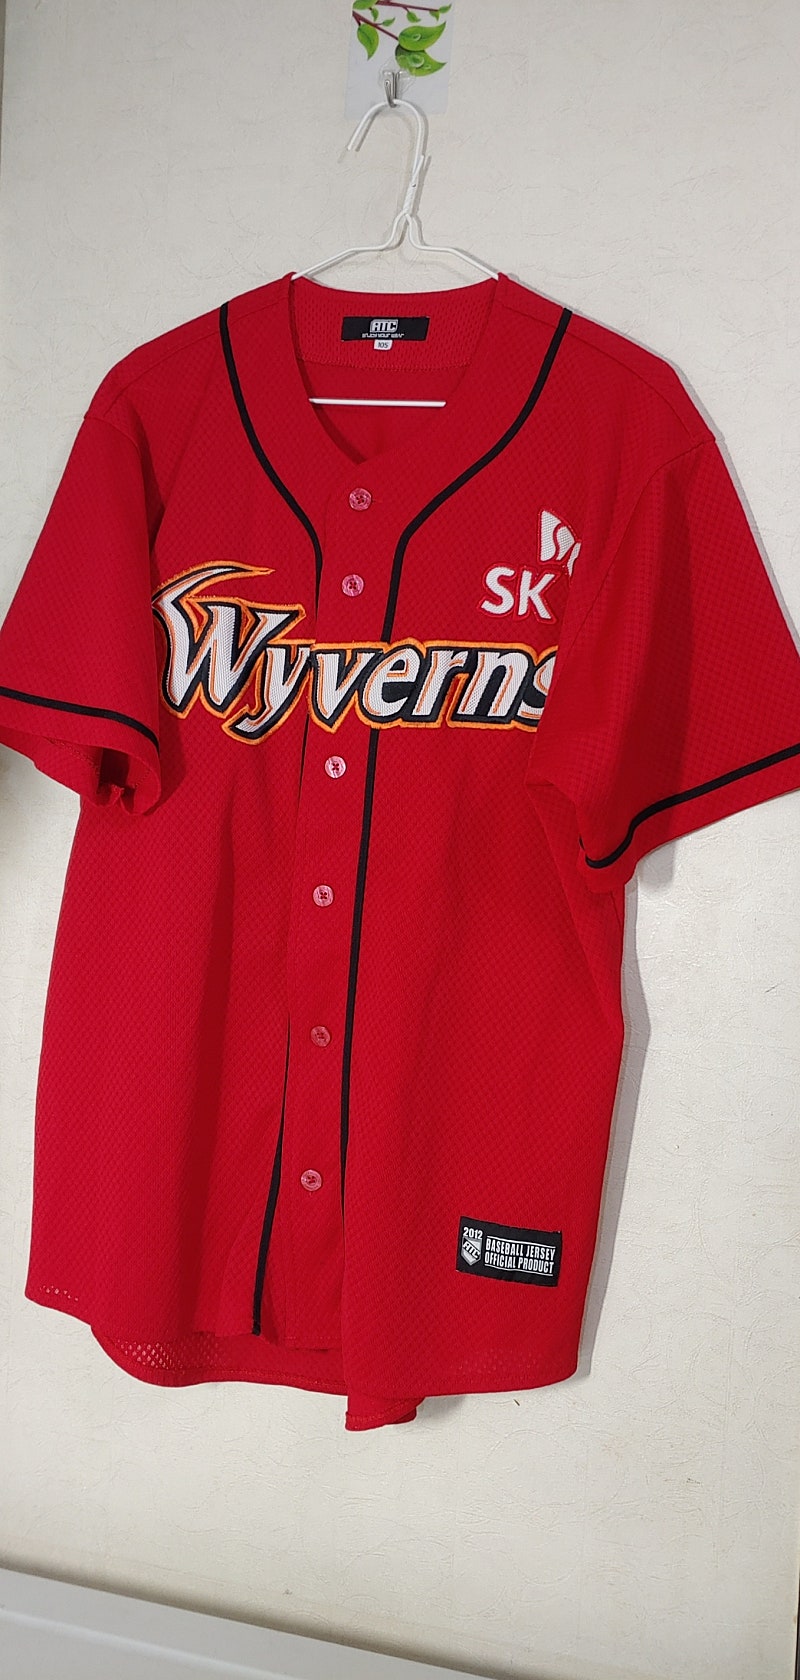 SK 와이번스 최정 유니폼 105